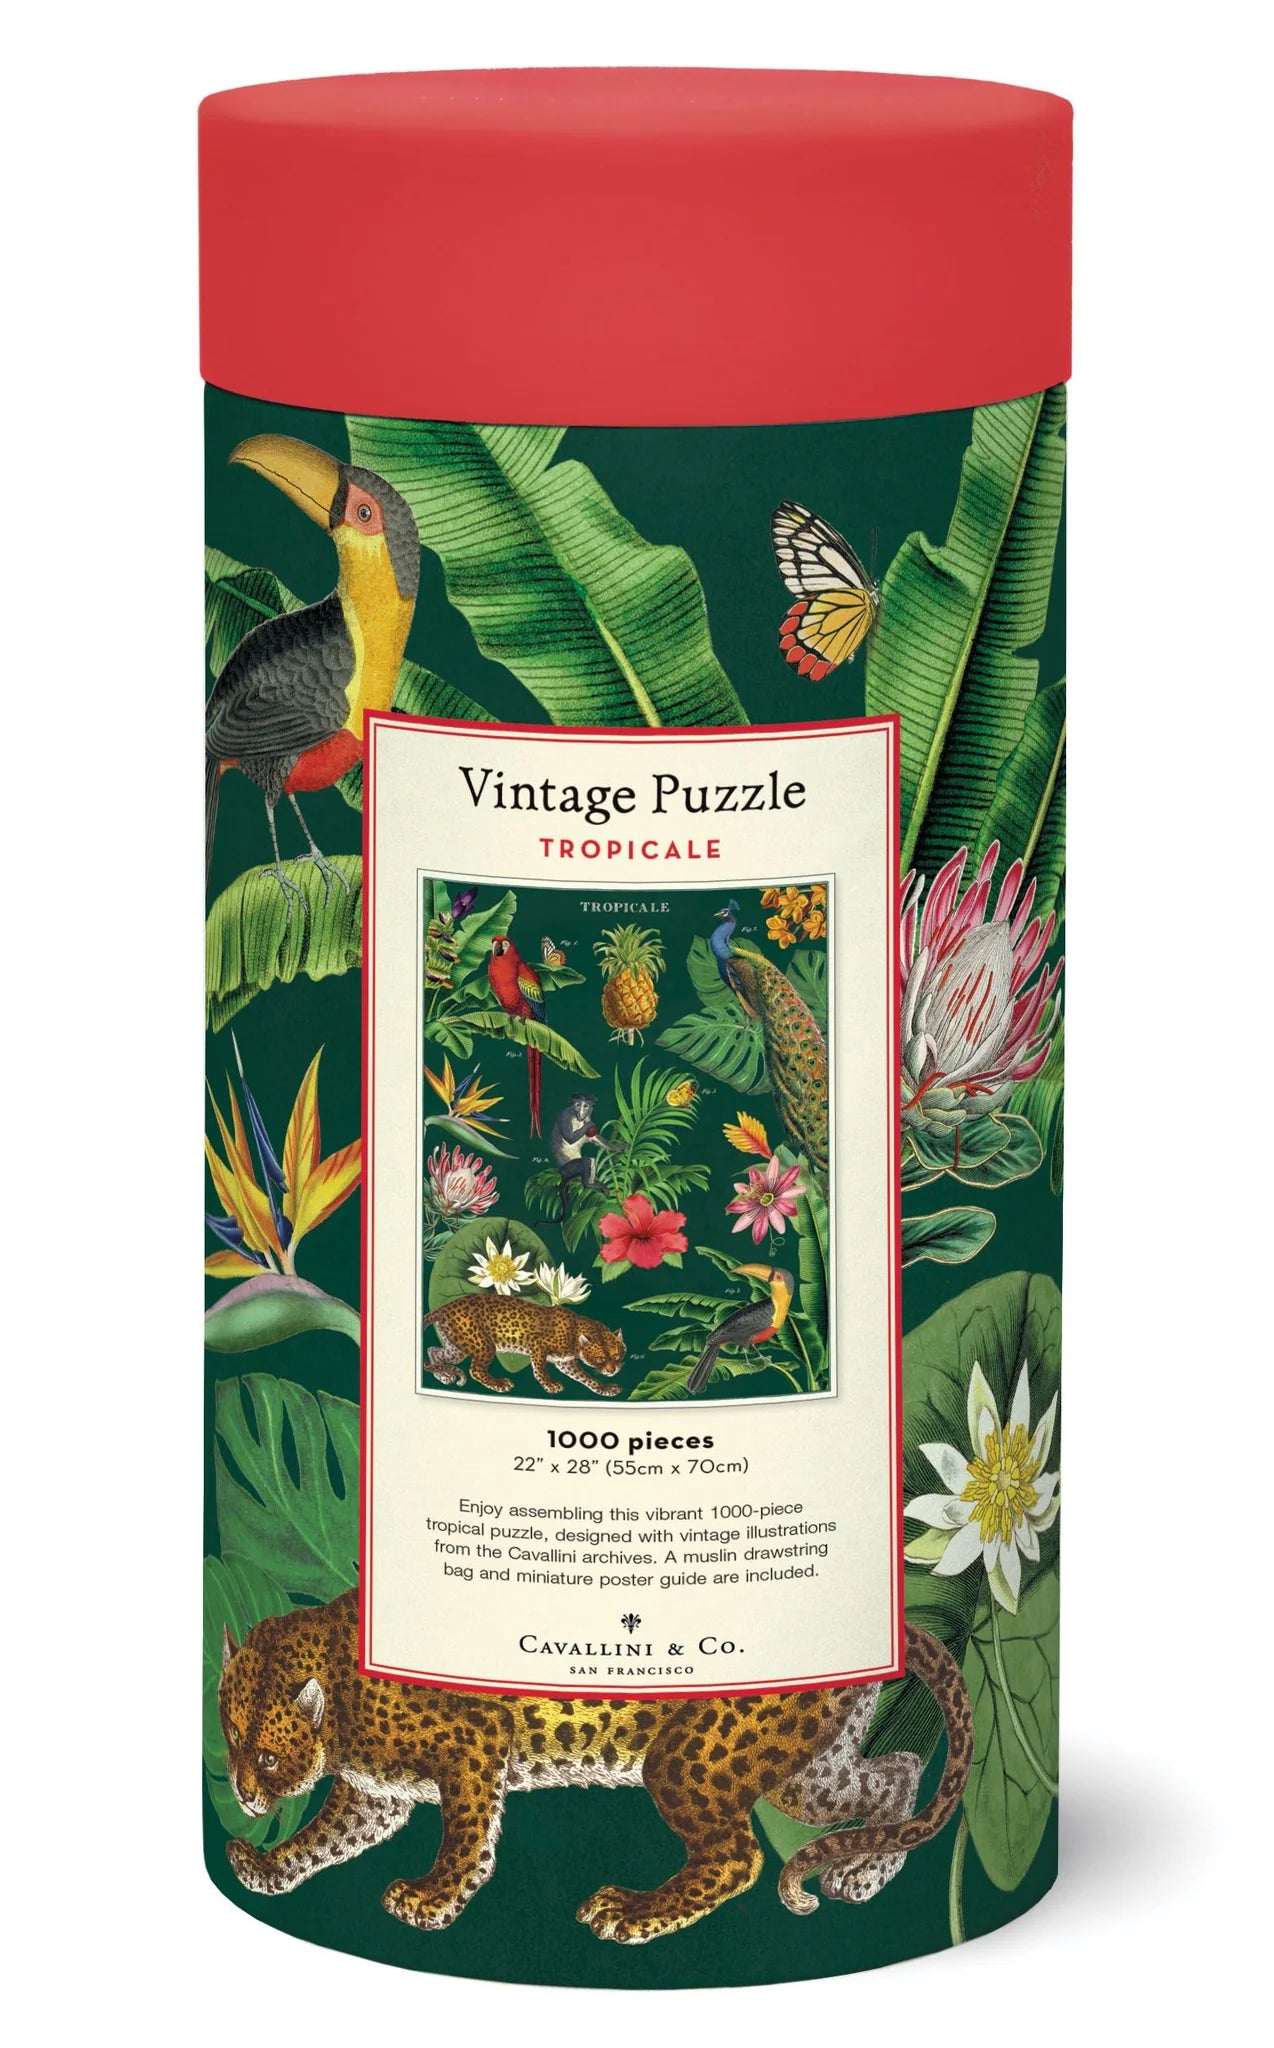 Vintage puzzle, Tropicale